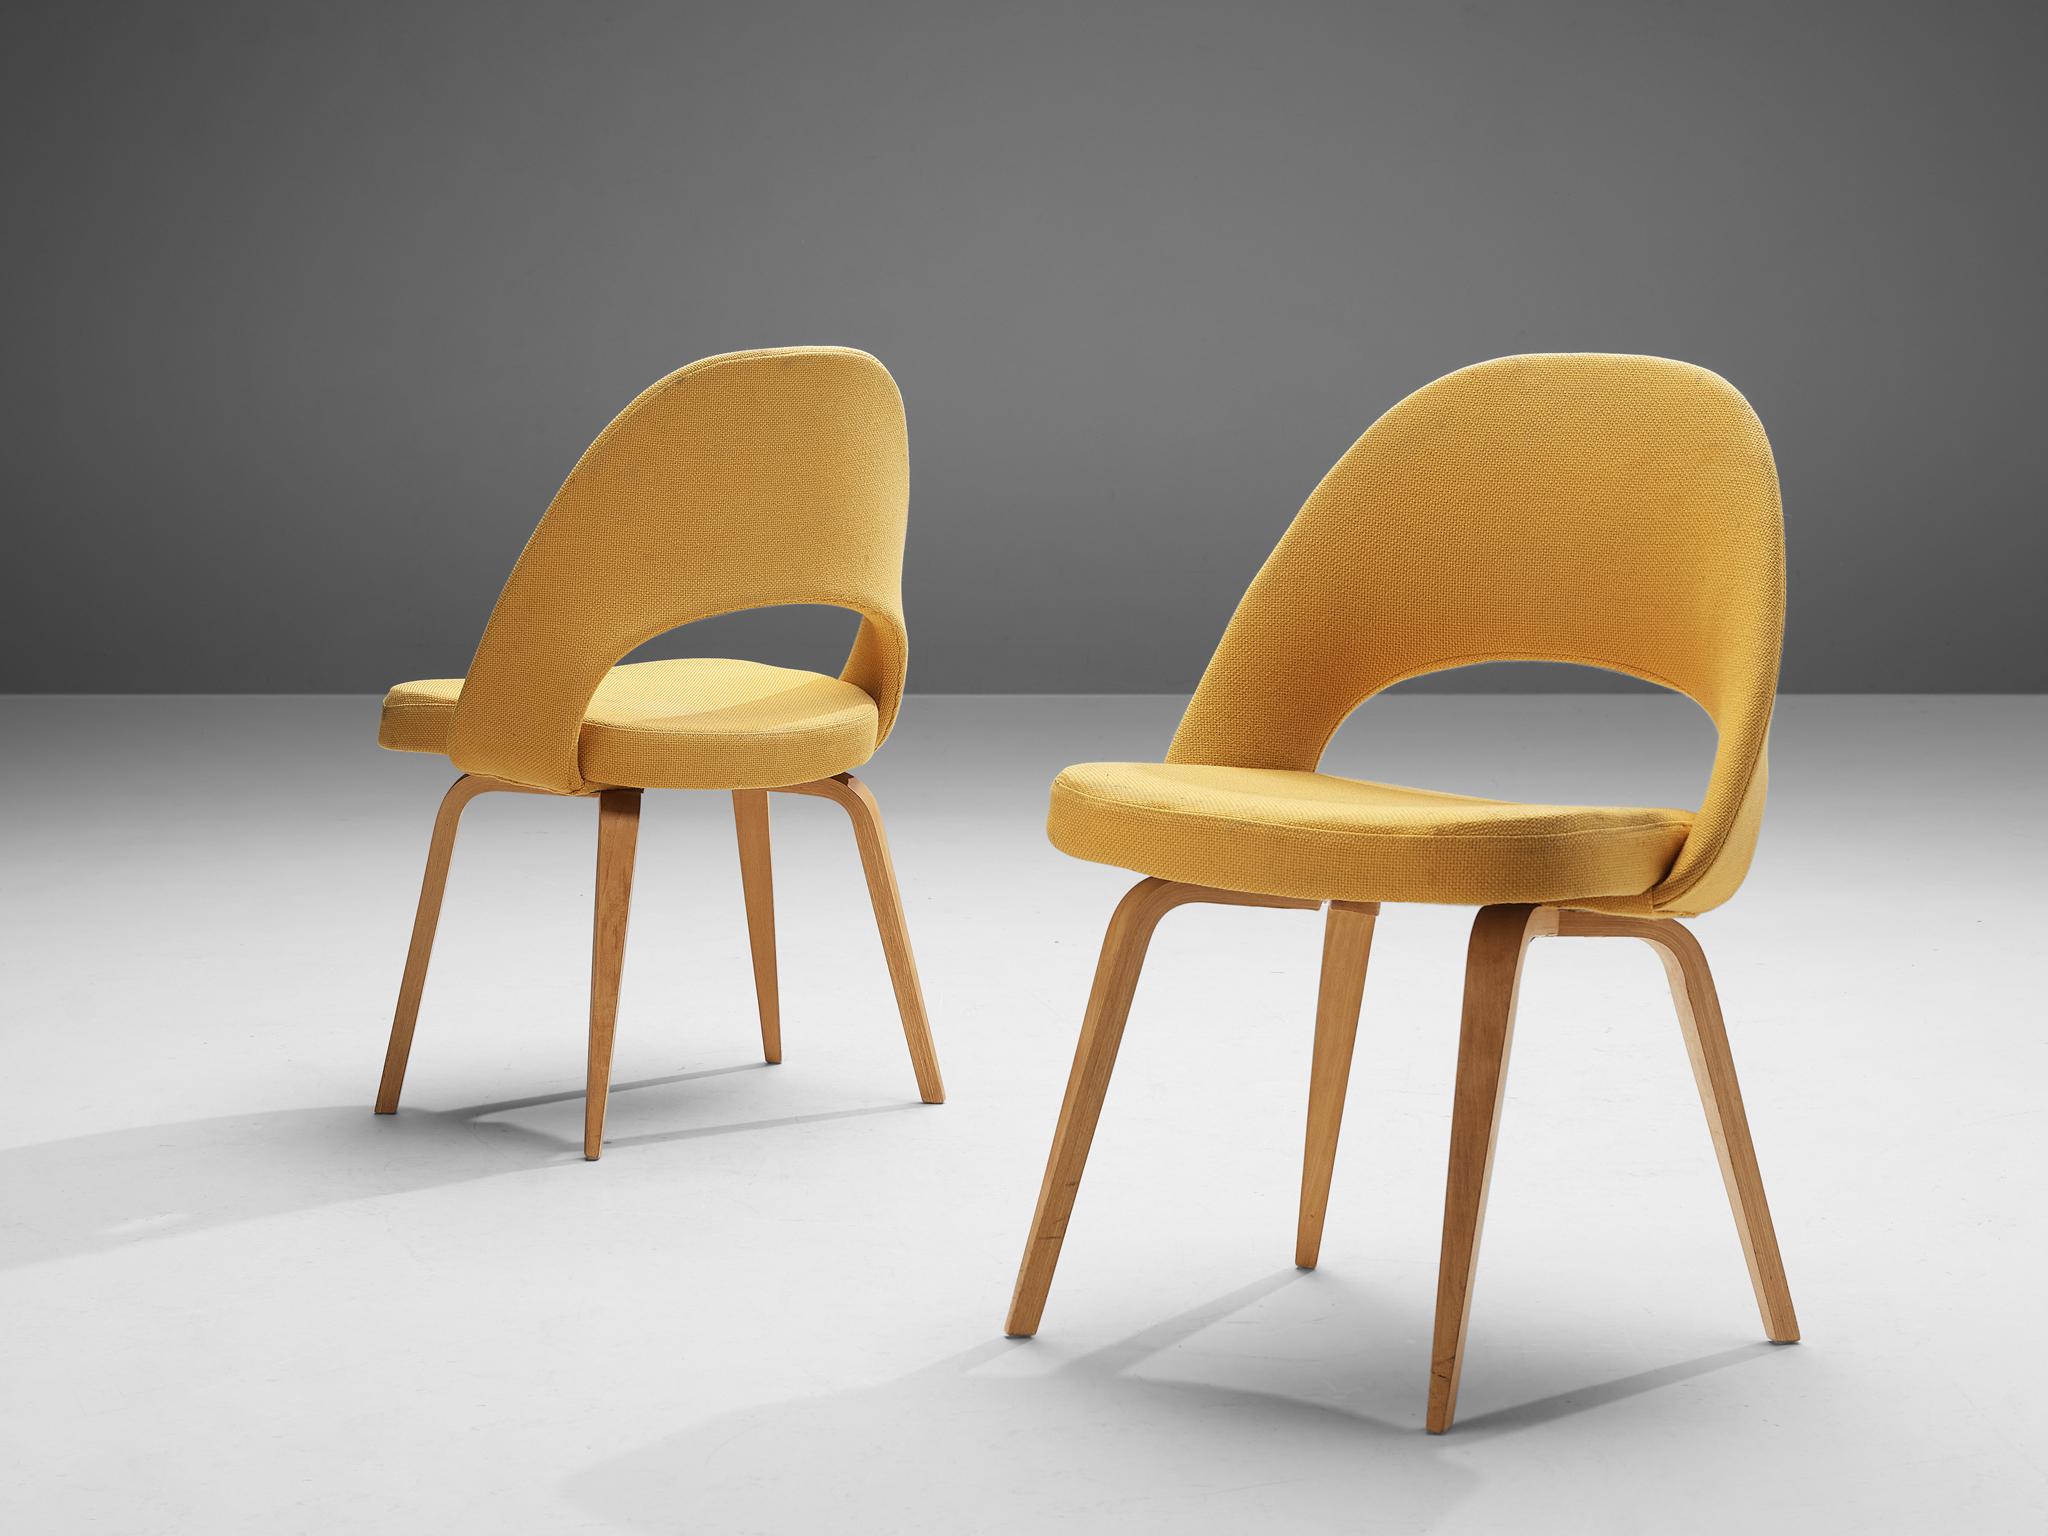 Eero Saarinen pour Knoll International, paire de chaises modèle 72, en bois et tissu jaune, États-Unis, design 1948

Paire de chaises de forme organique conçues par Eero Saarinen. Une forme fluide et sculpturale. Ce design intemporel et polyvalent